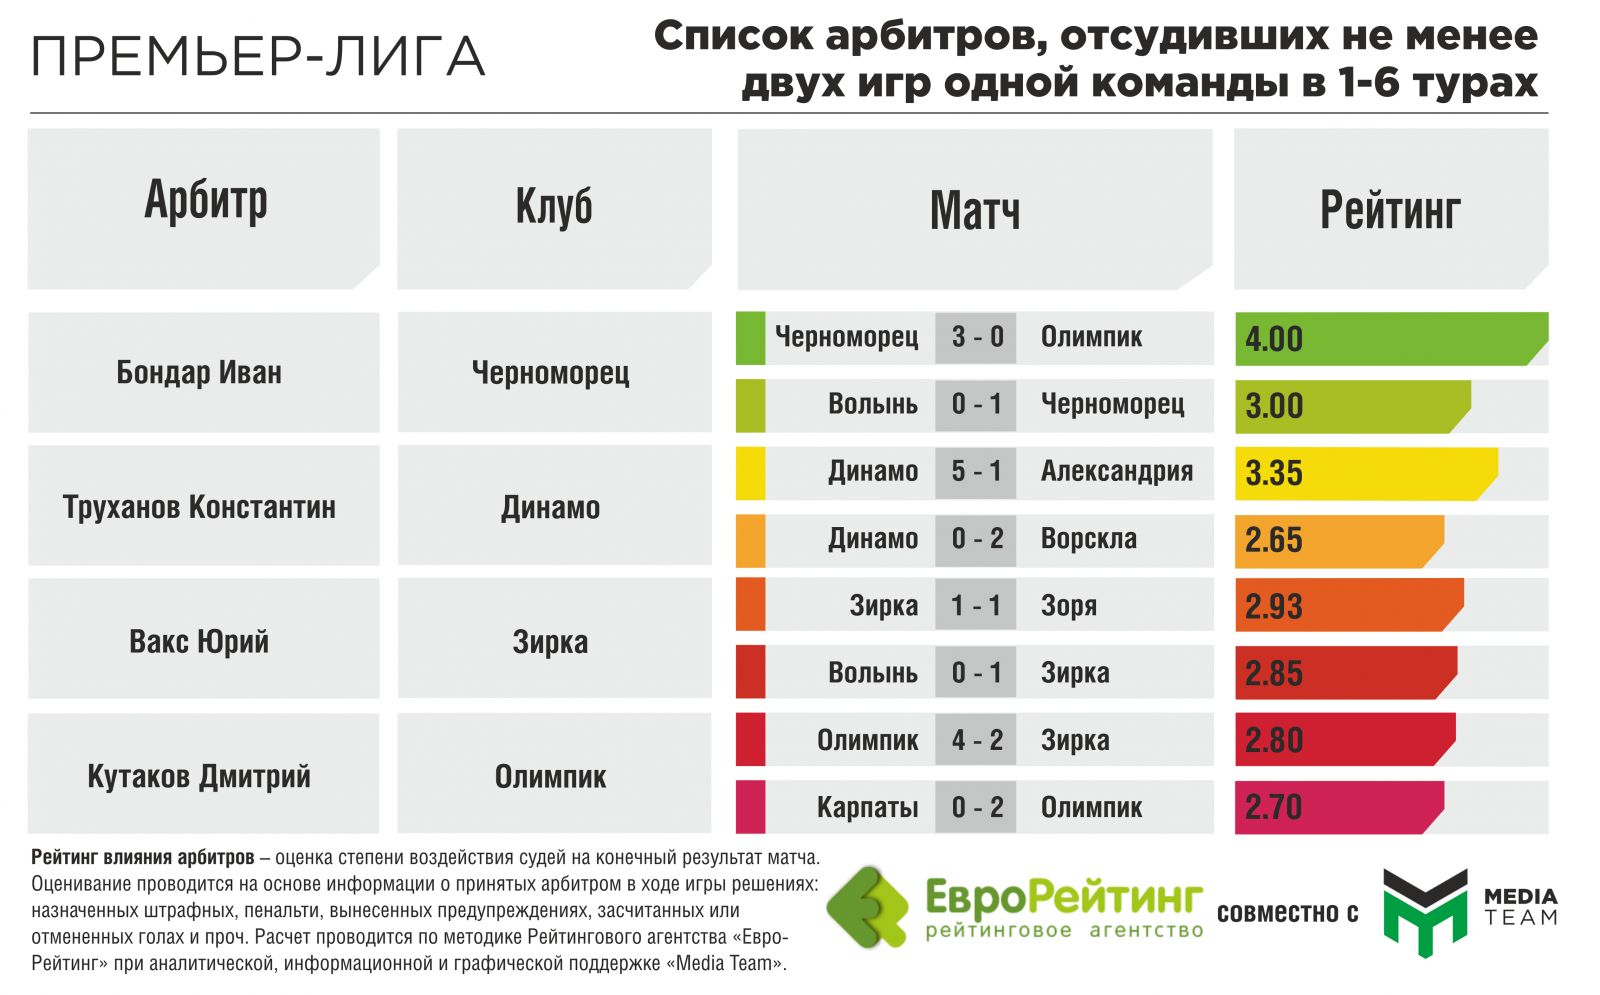 Матча рейтинг производителей. Судьи Украины список.